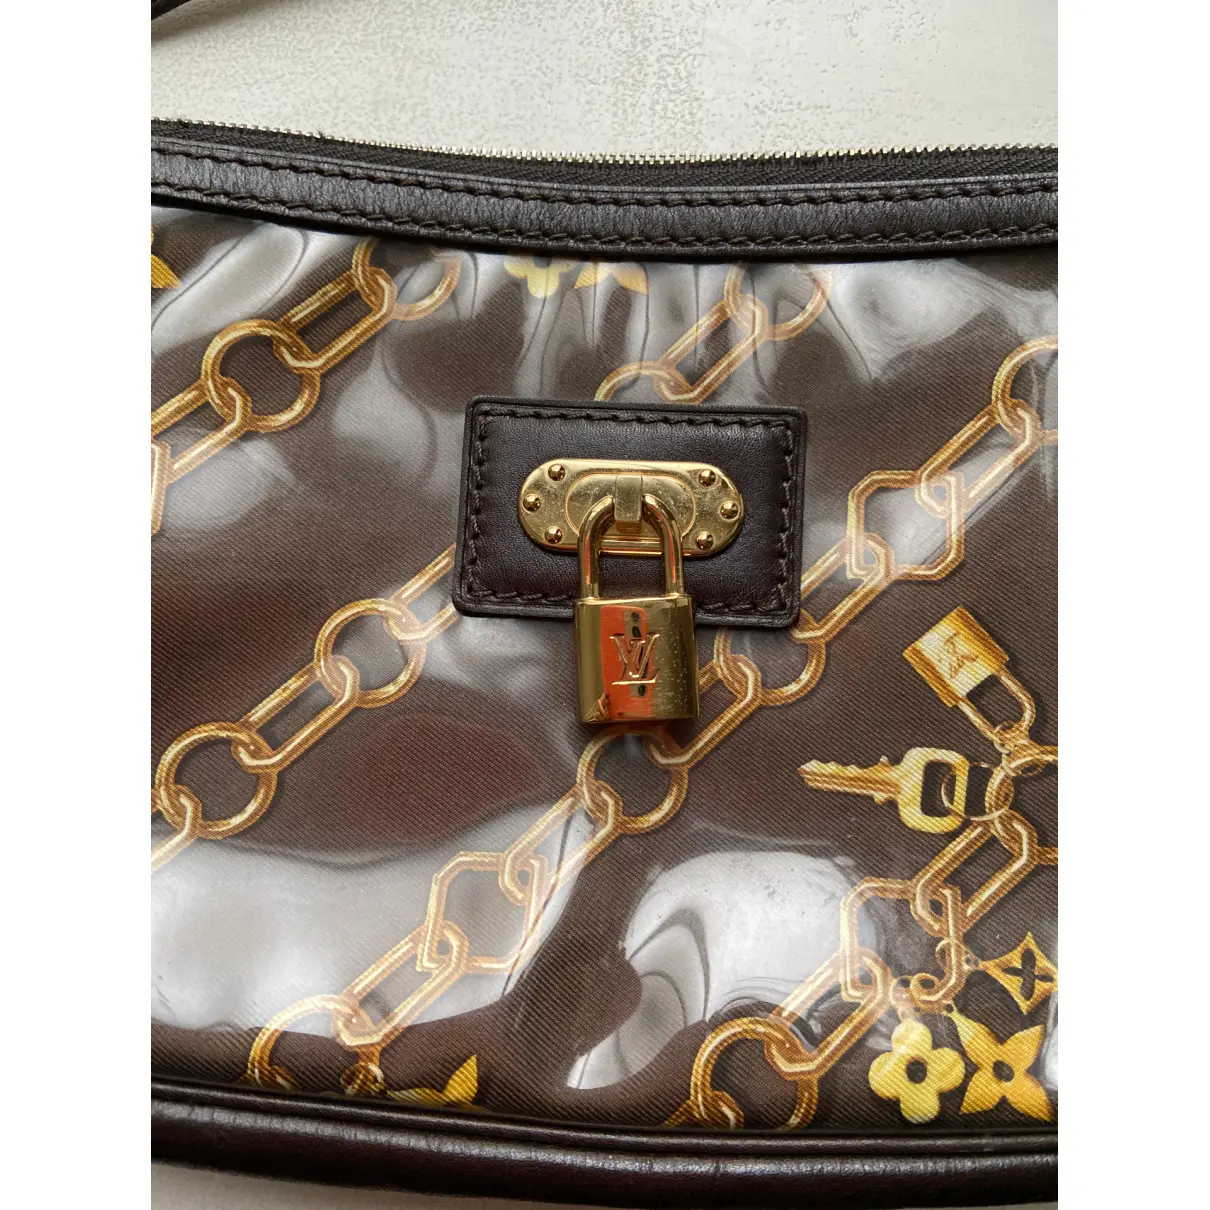 Buy Louis Vuitton Pochette Accessoire vegan leather clutch bag online